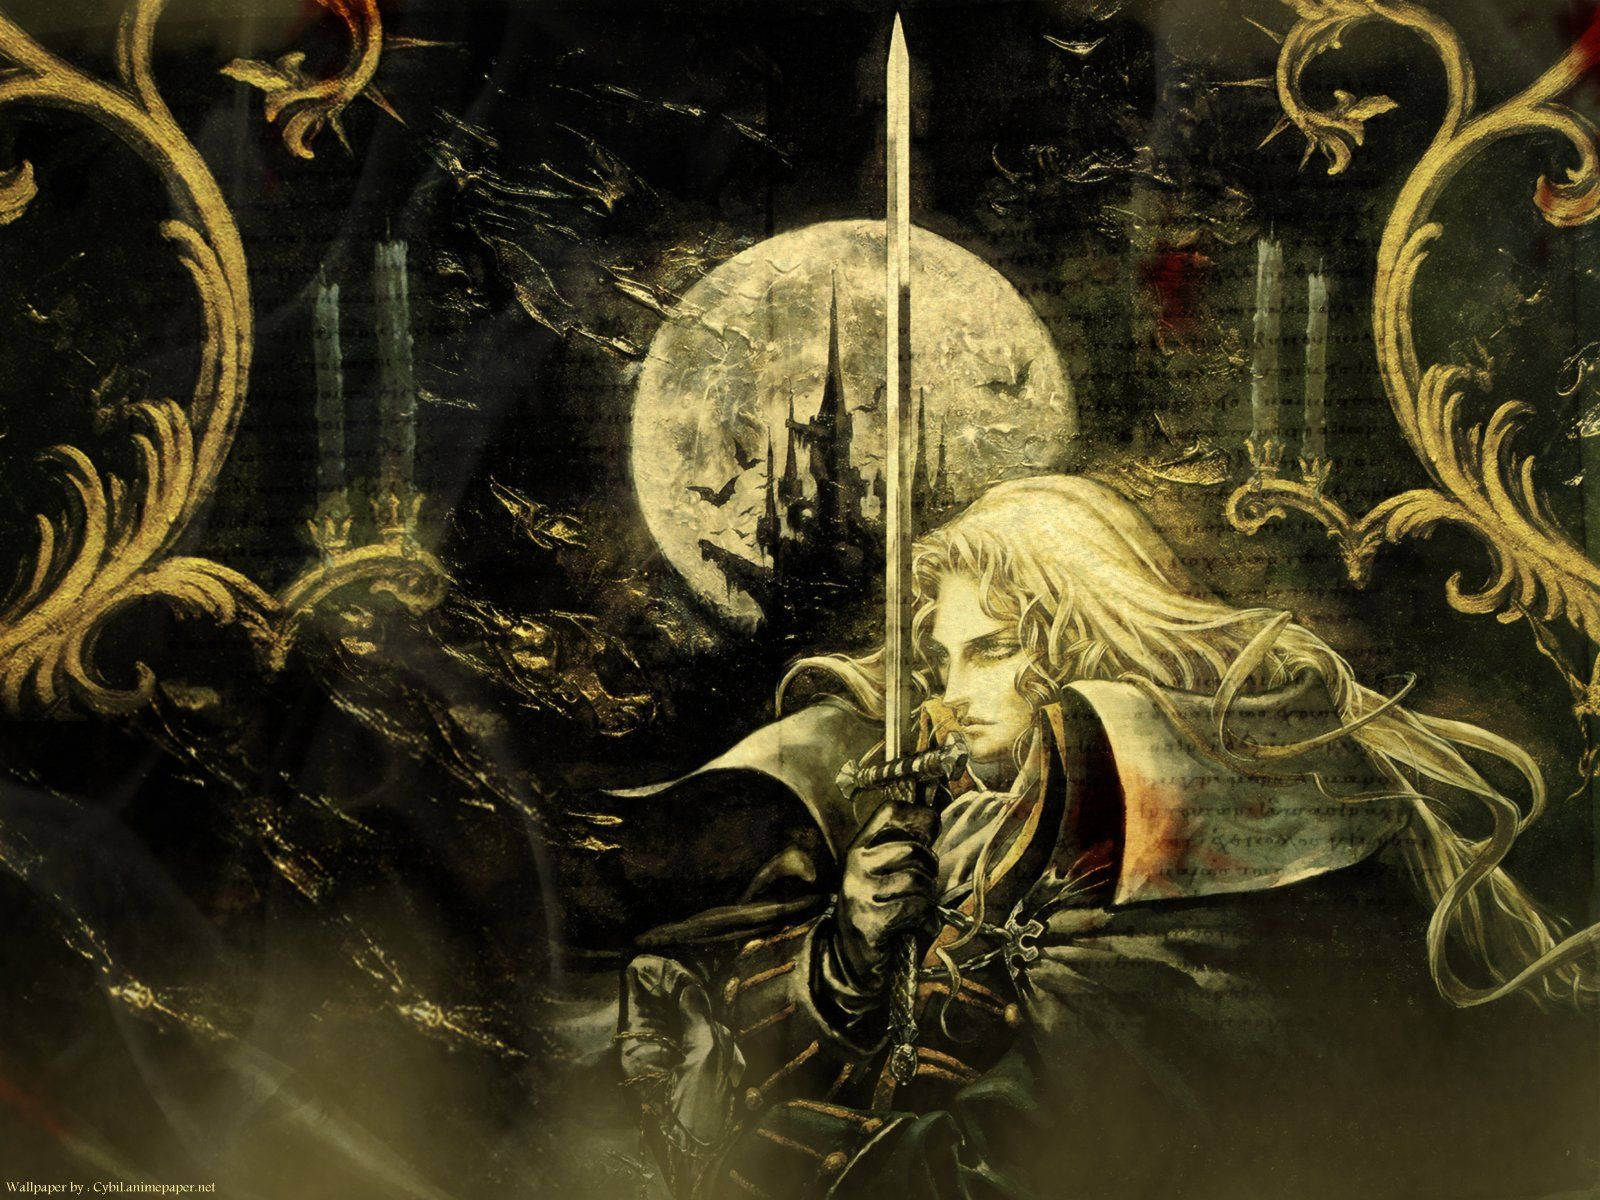  Castlevania Hintergrundbild 1600x1200. Download A Black and Gold CastleVania Emblem Wallpaper